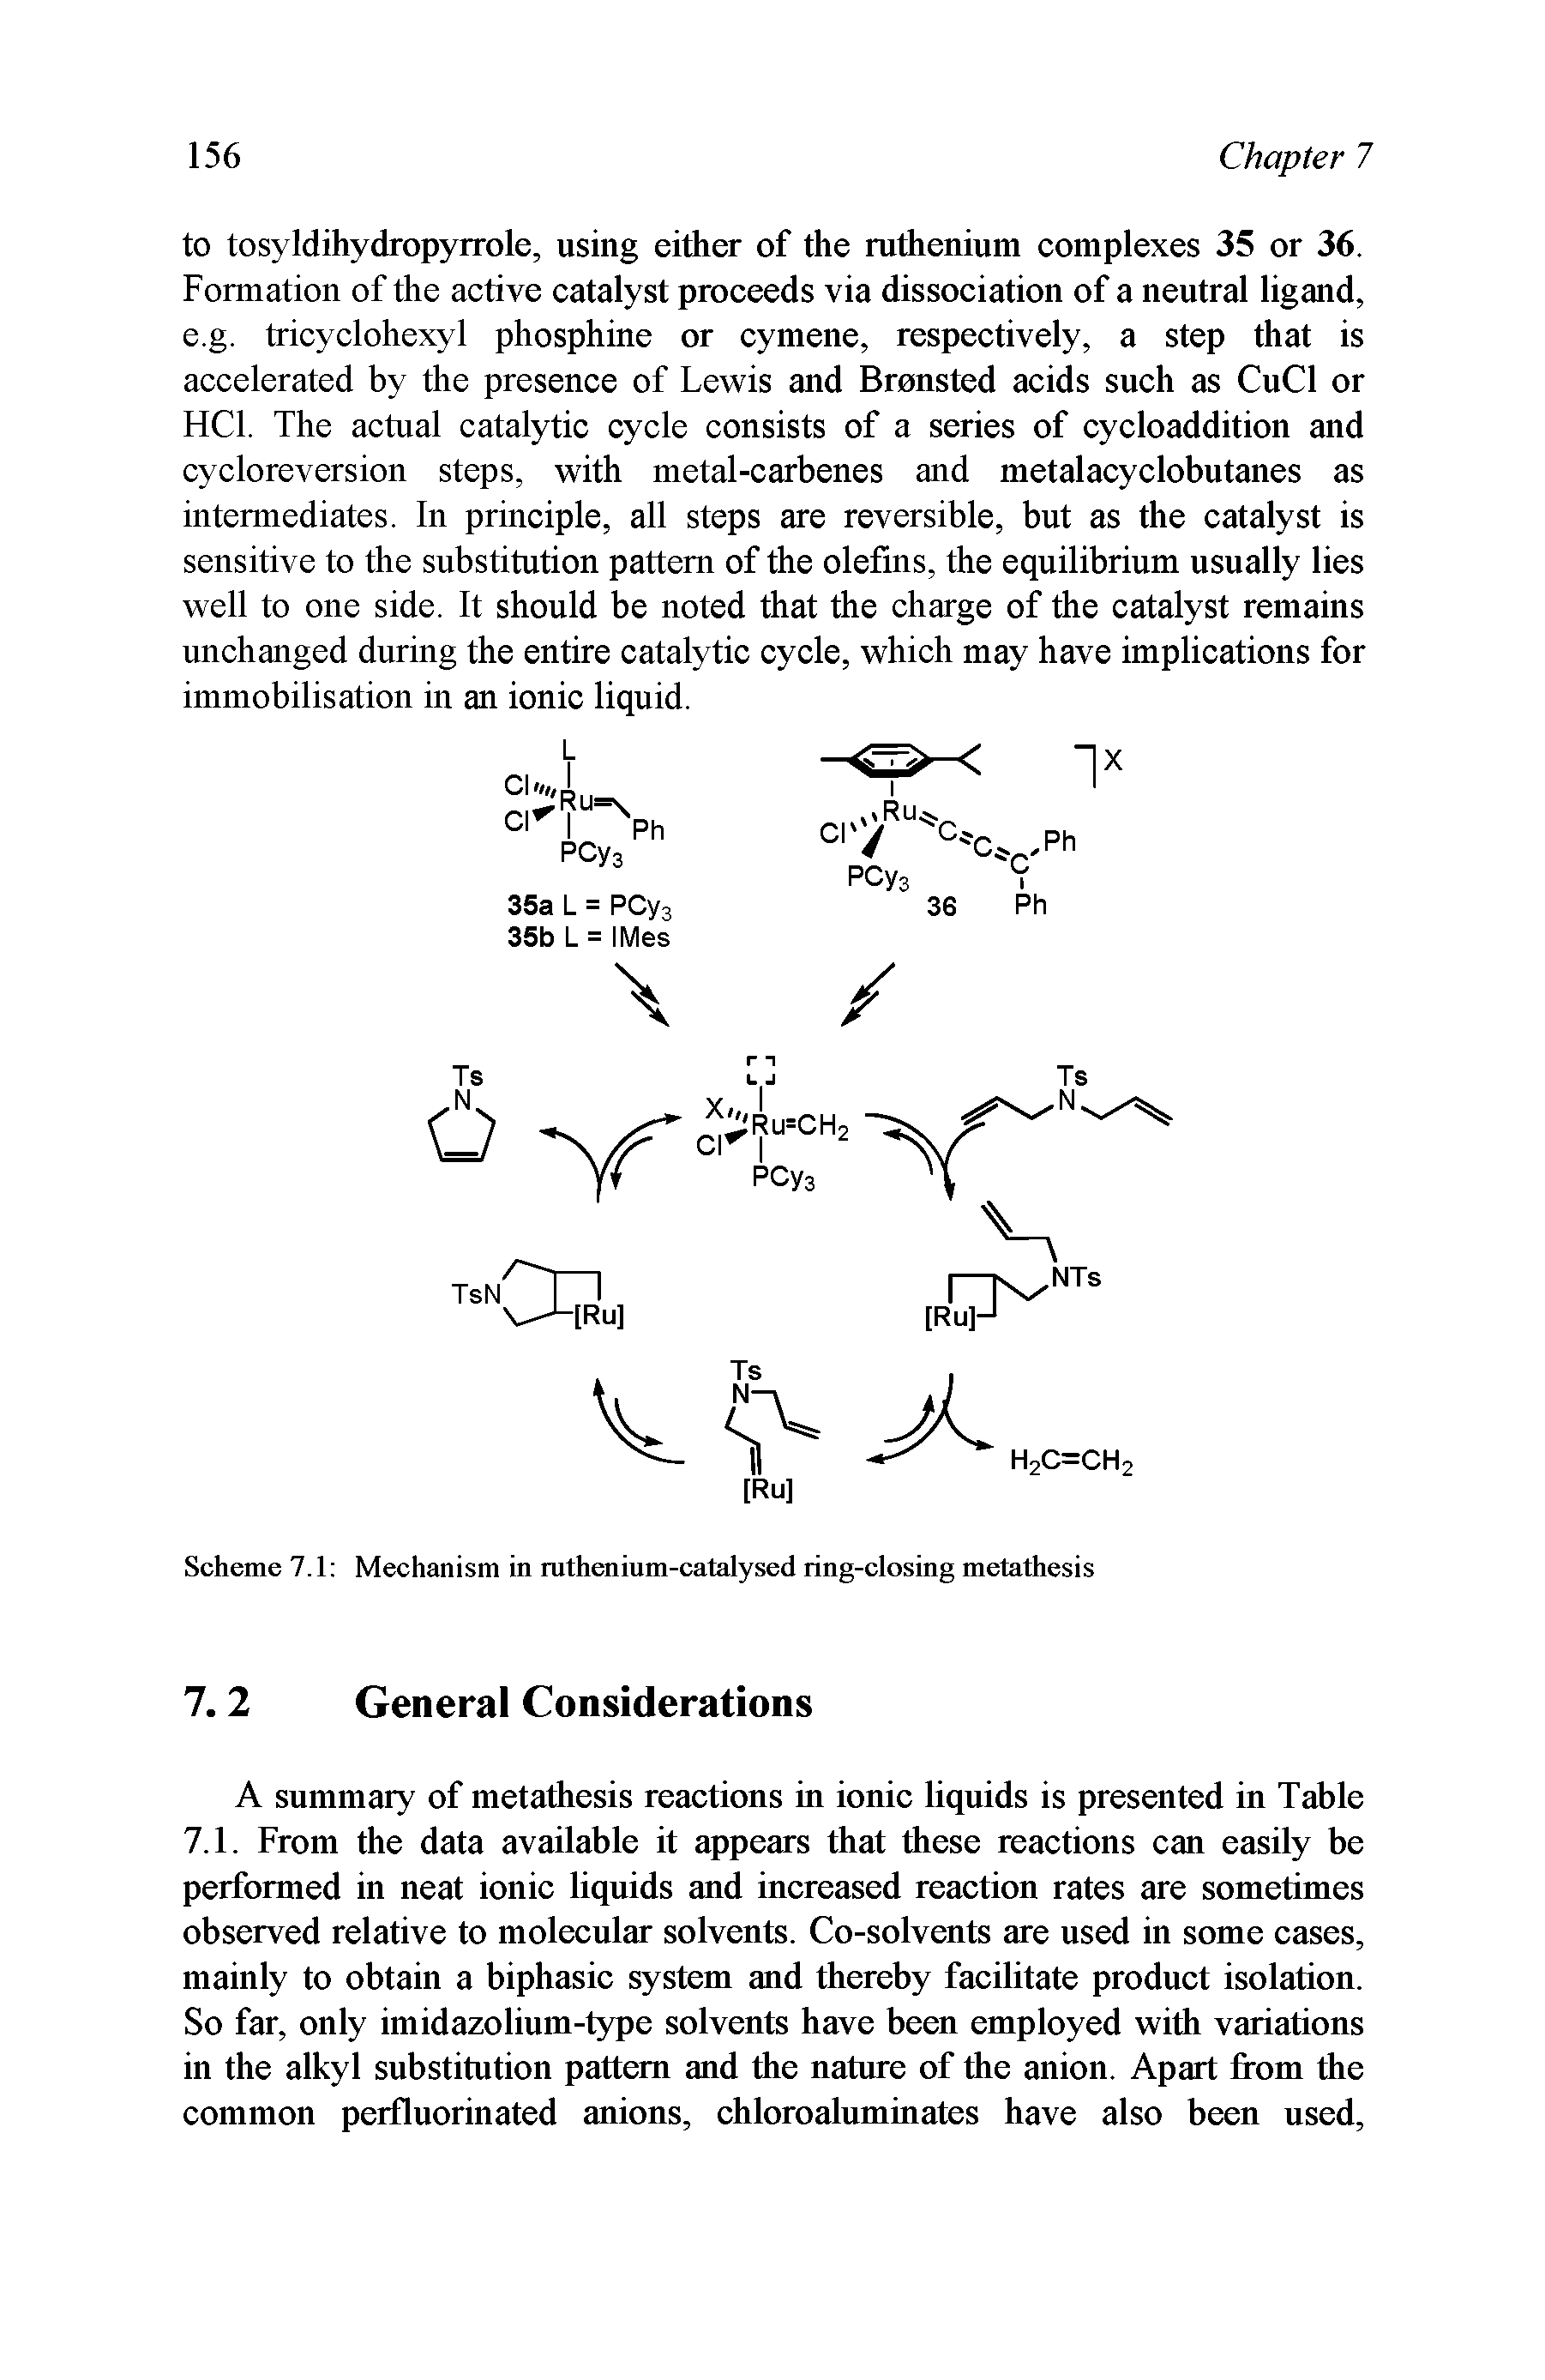 Scheme 7.1 Mechanism in ruthenium-catalysed ring-closing metathesis...